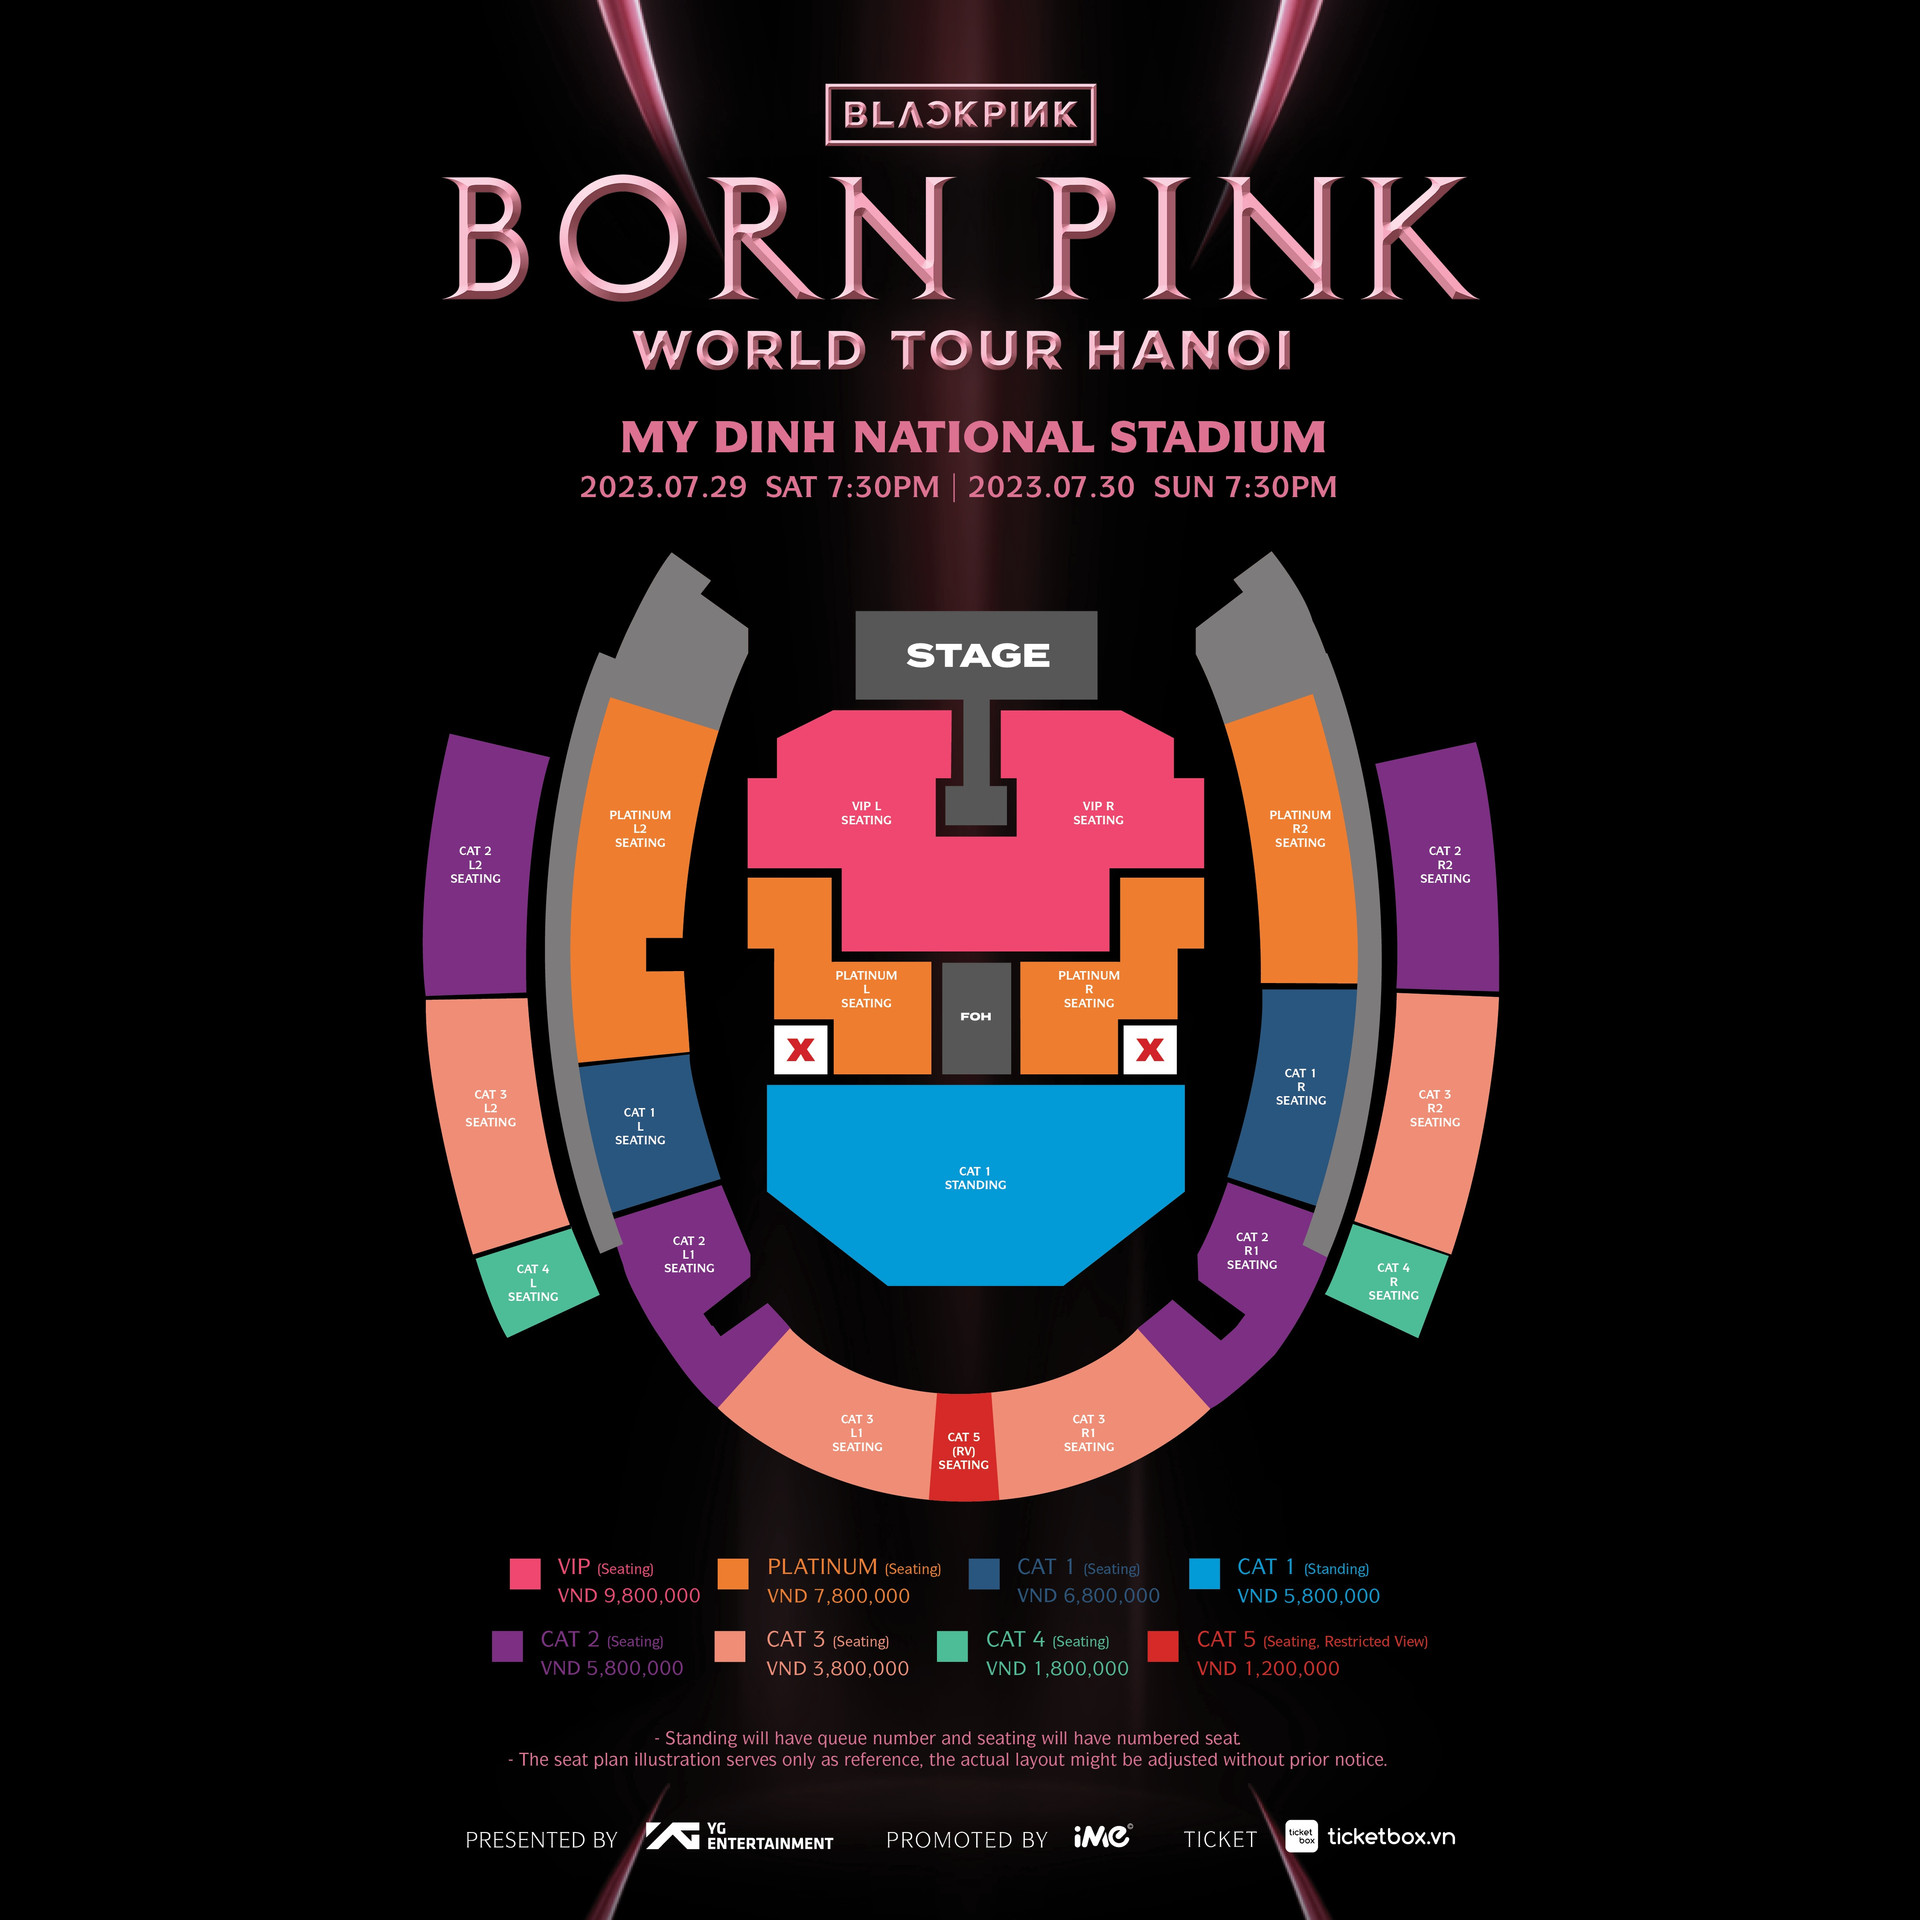 Ban Tổ chức công bố giá vé concert Blackpink, vé cao nhất gần 10 triệu đồng - 1